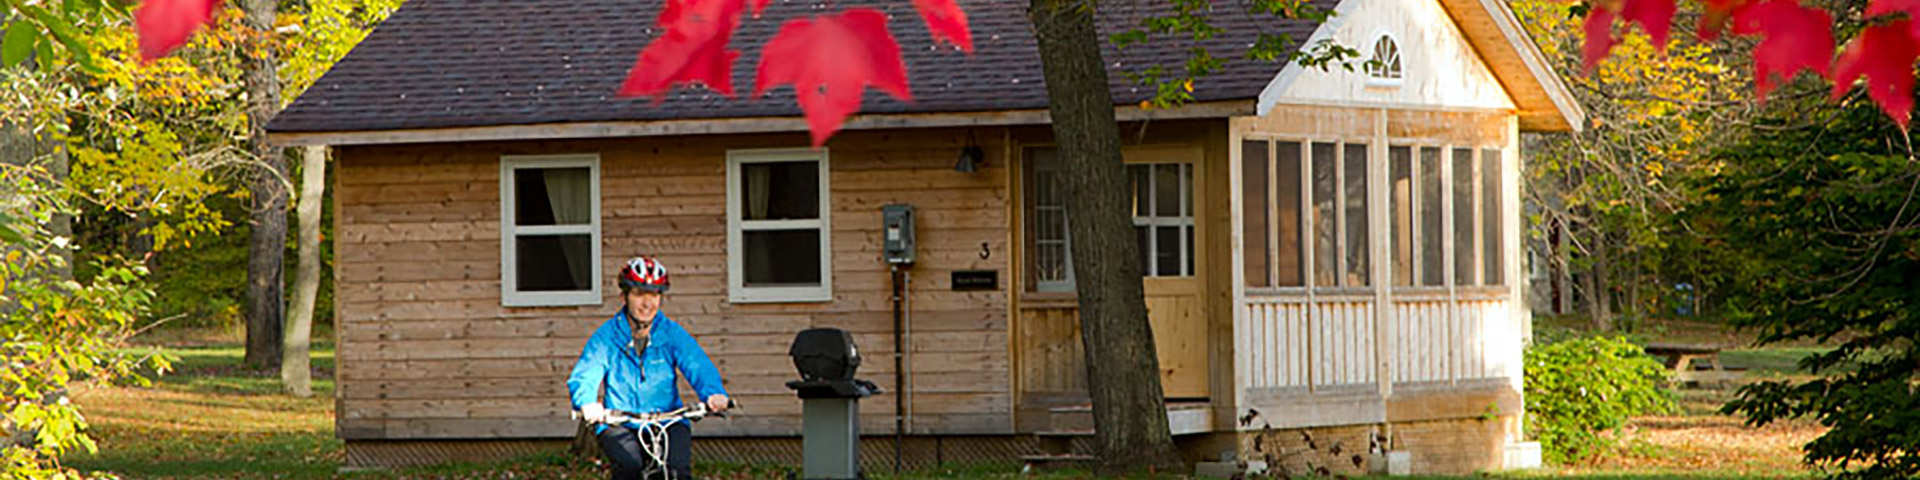 Deux enfants rôtissent des guimauves à l'extérieur de leur cabine.